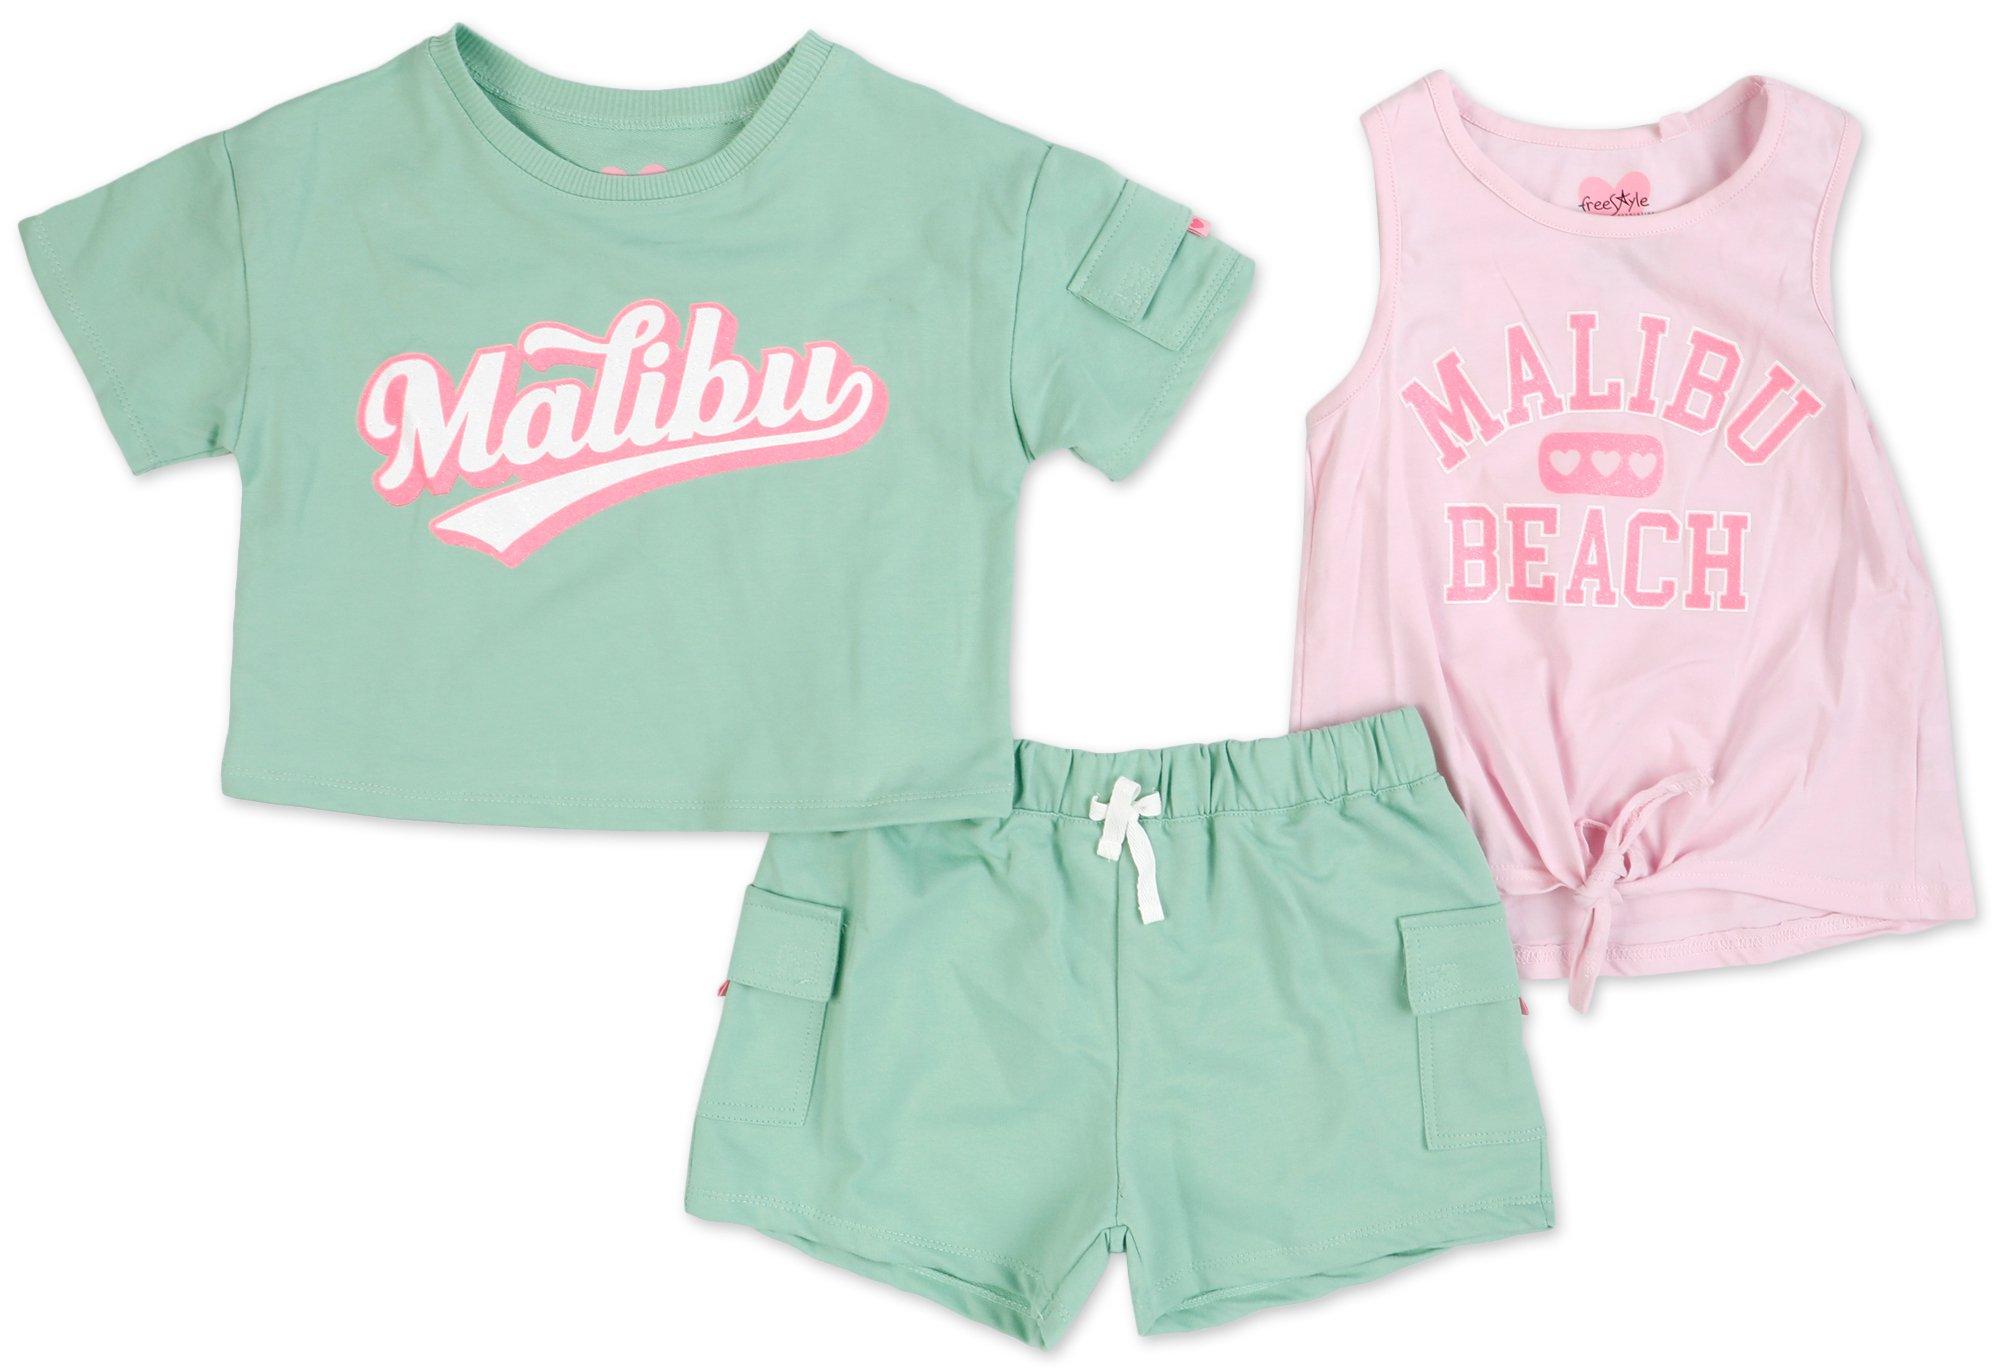 Little Girls 3 Pc Malibu Shorts Set